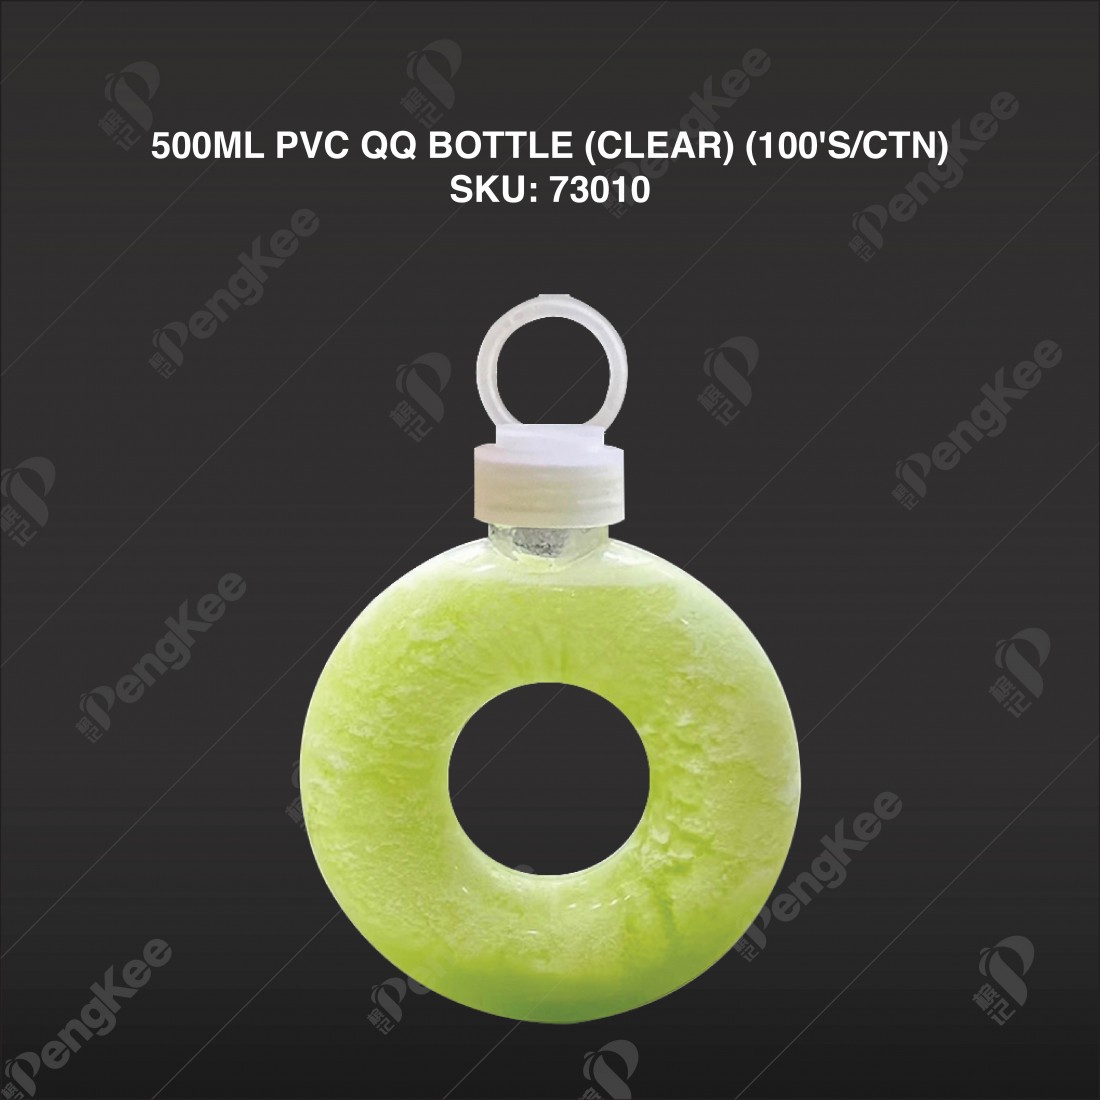 500ML PVC QQ BOTTLE (CLEAR) (100'S/CTN)